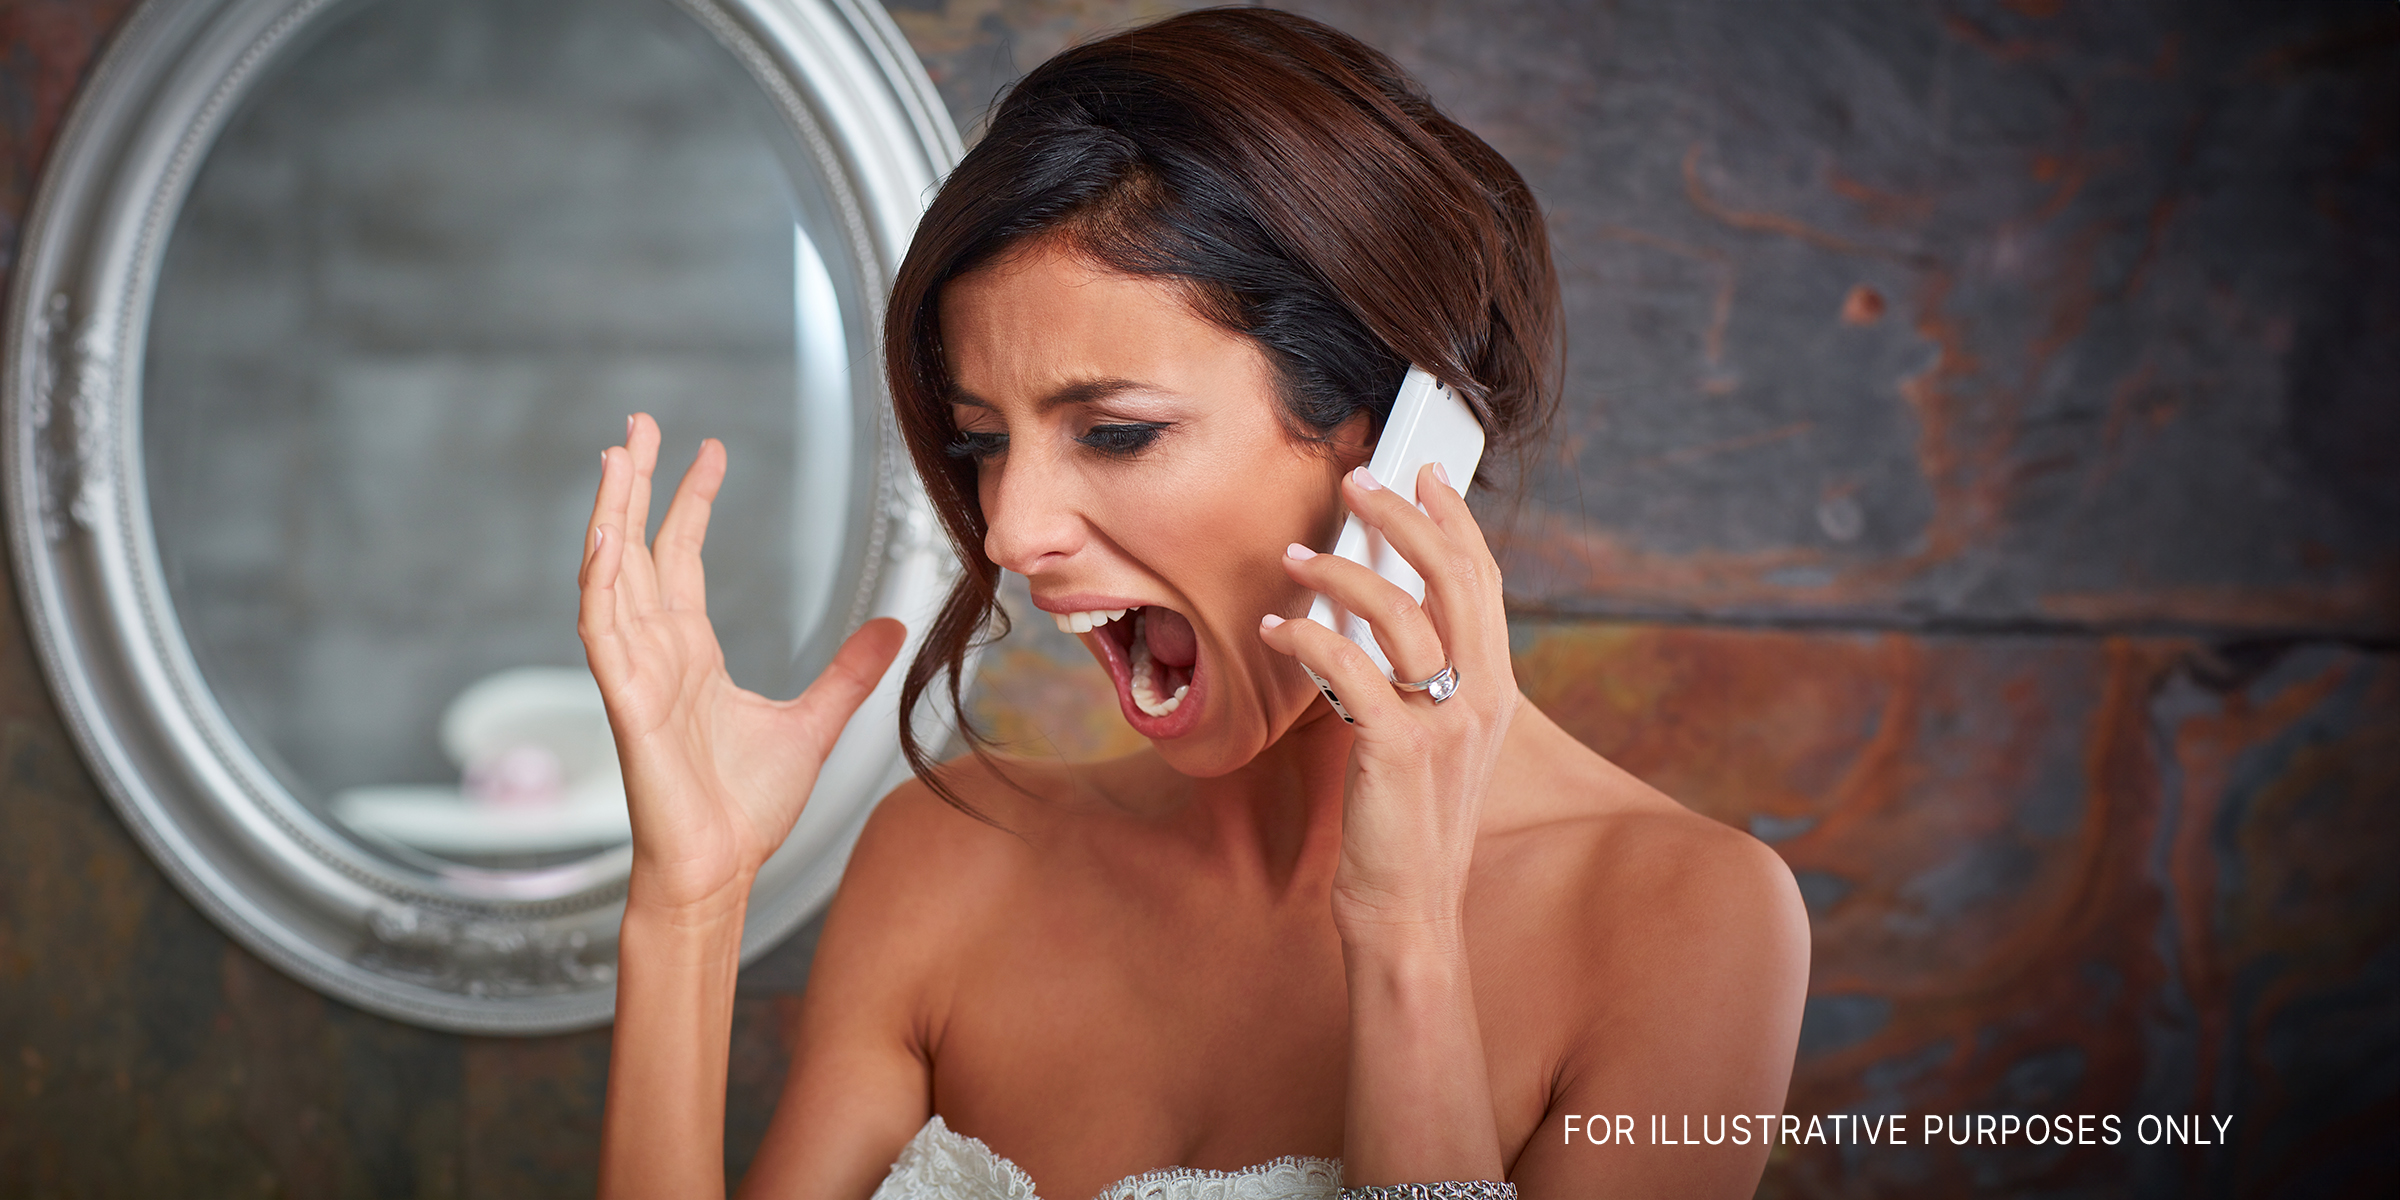 Eine wütende Braut, die am Telefon schreit | Quelle: Shutterstock